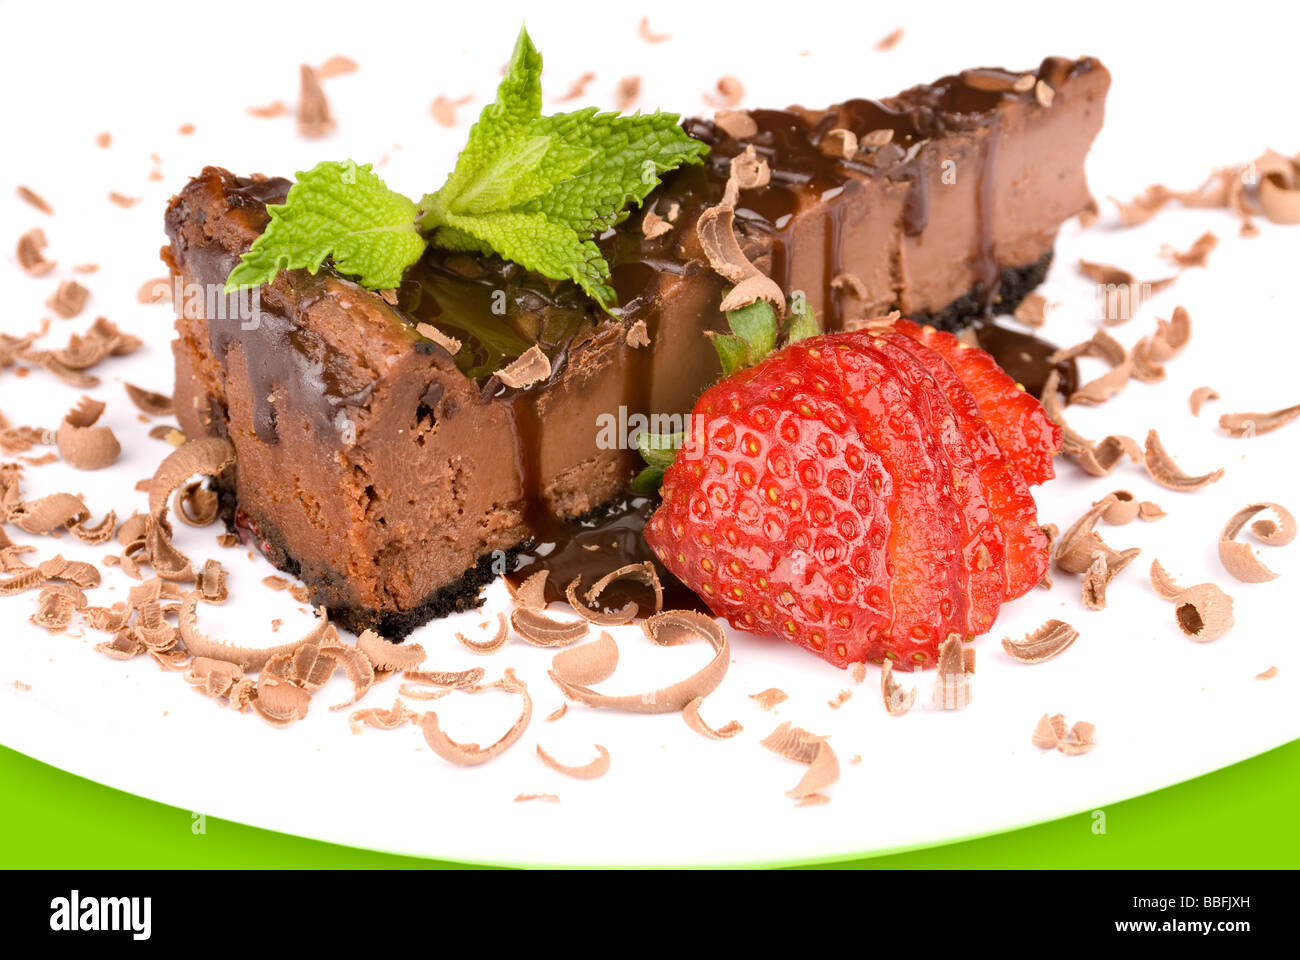 Eine Nahaufnahme ein Stück Schokolade Käsekuchen mit einer frischen Erdbeere garnieren und Minze Stockfoto